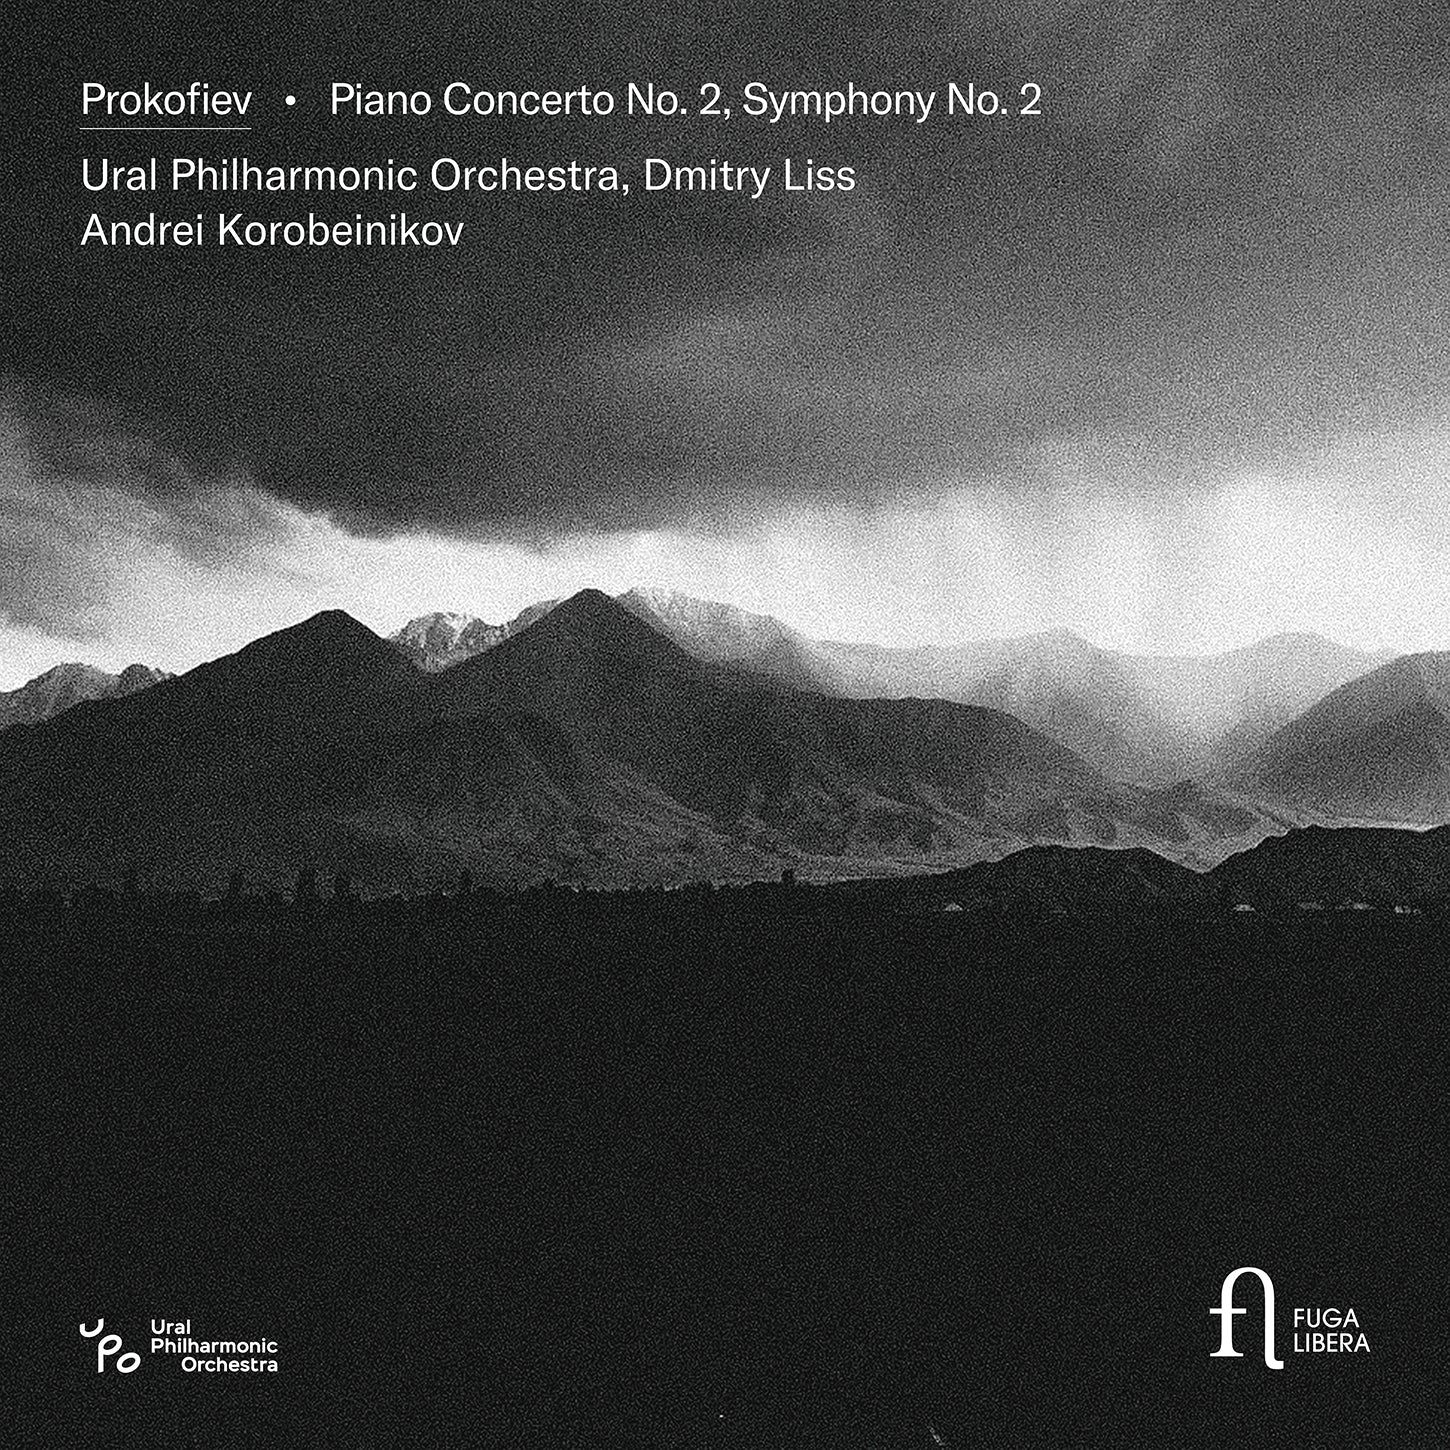 Prokofiev: Piano Concerto No. 2 & Symphony No. 2 / Liss, Korobeinikov, Ural PO